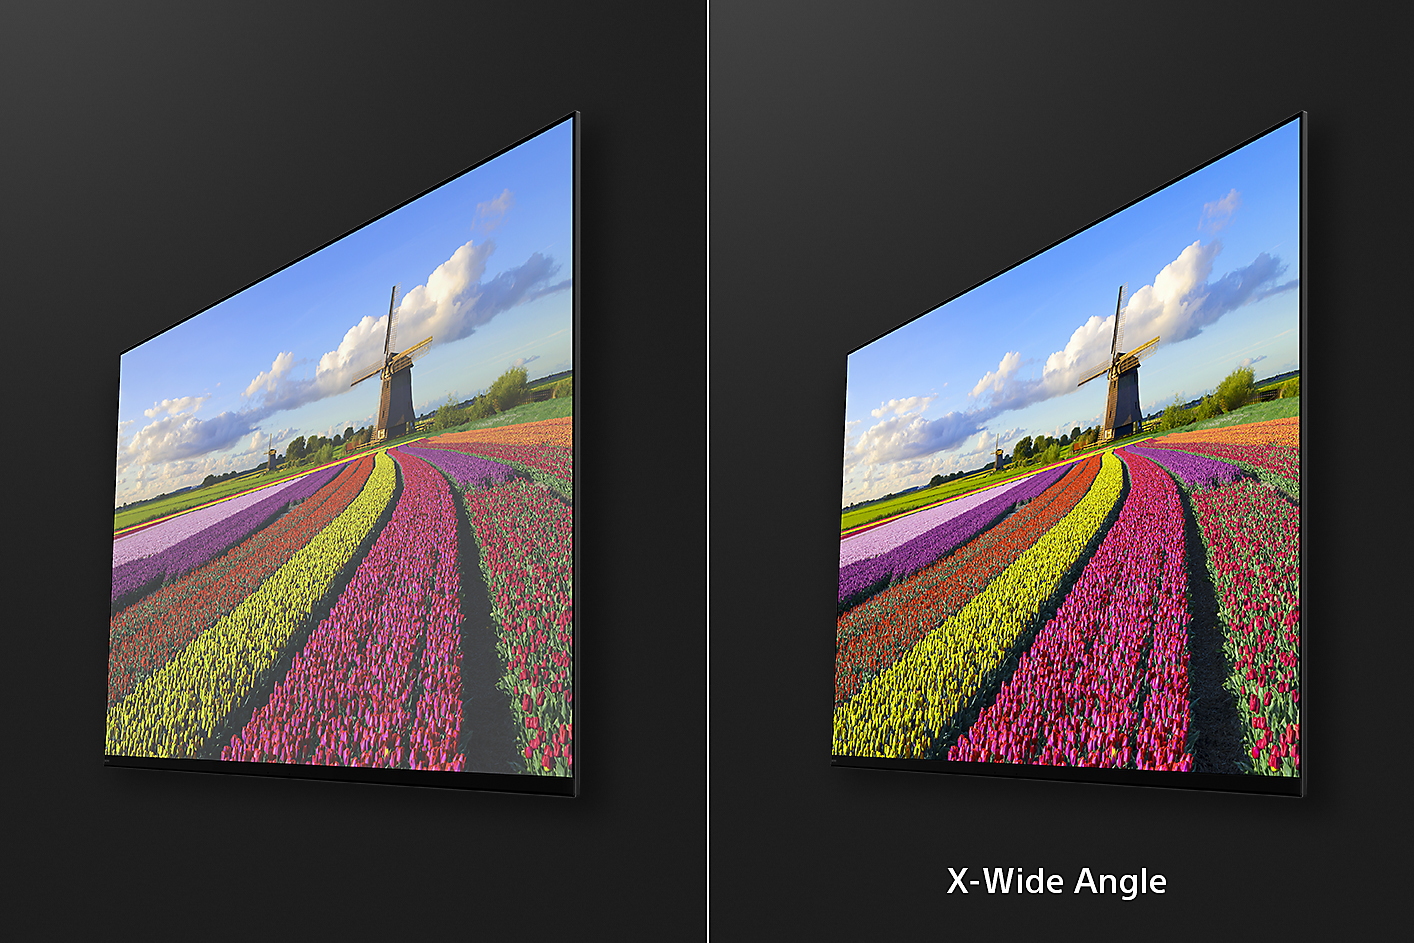 Deux captures d’écran en biais de fleurs dans un champ, l’image de droite montrant les avantages de X-Wide Angle